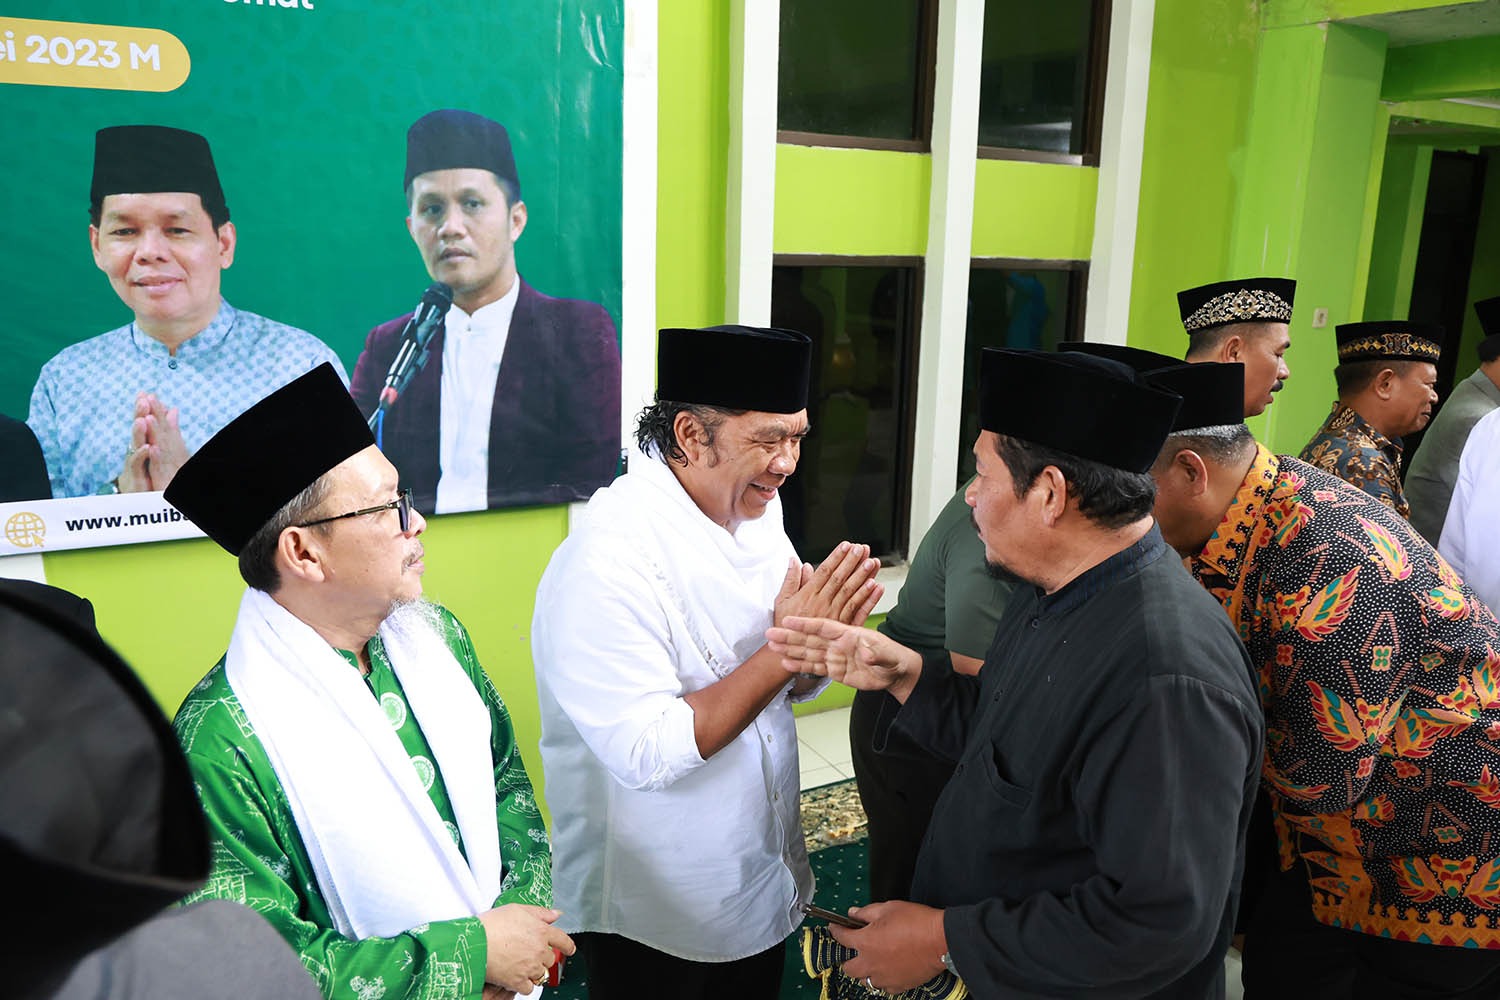 Pj Gubernur Banten Al Muktabar: Kebersamaan Modal Dasar Percepatan Pembangunan